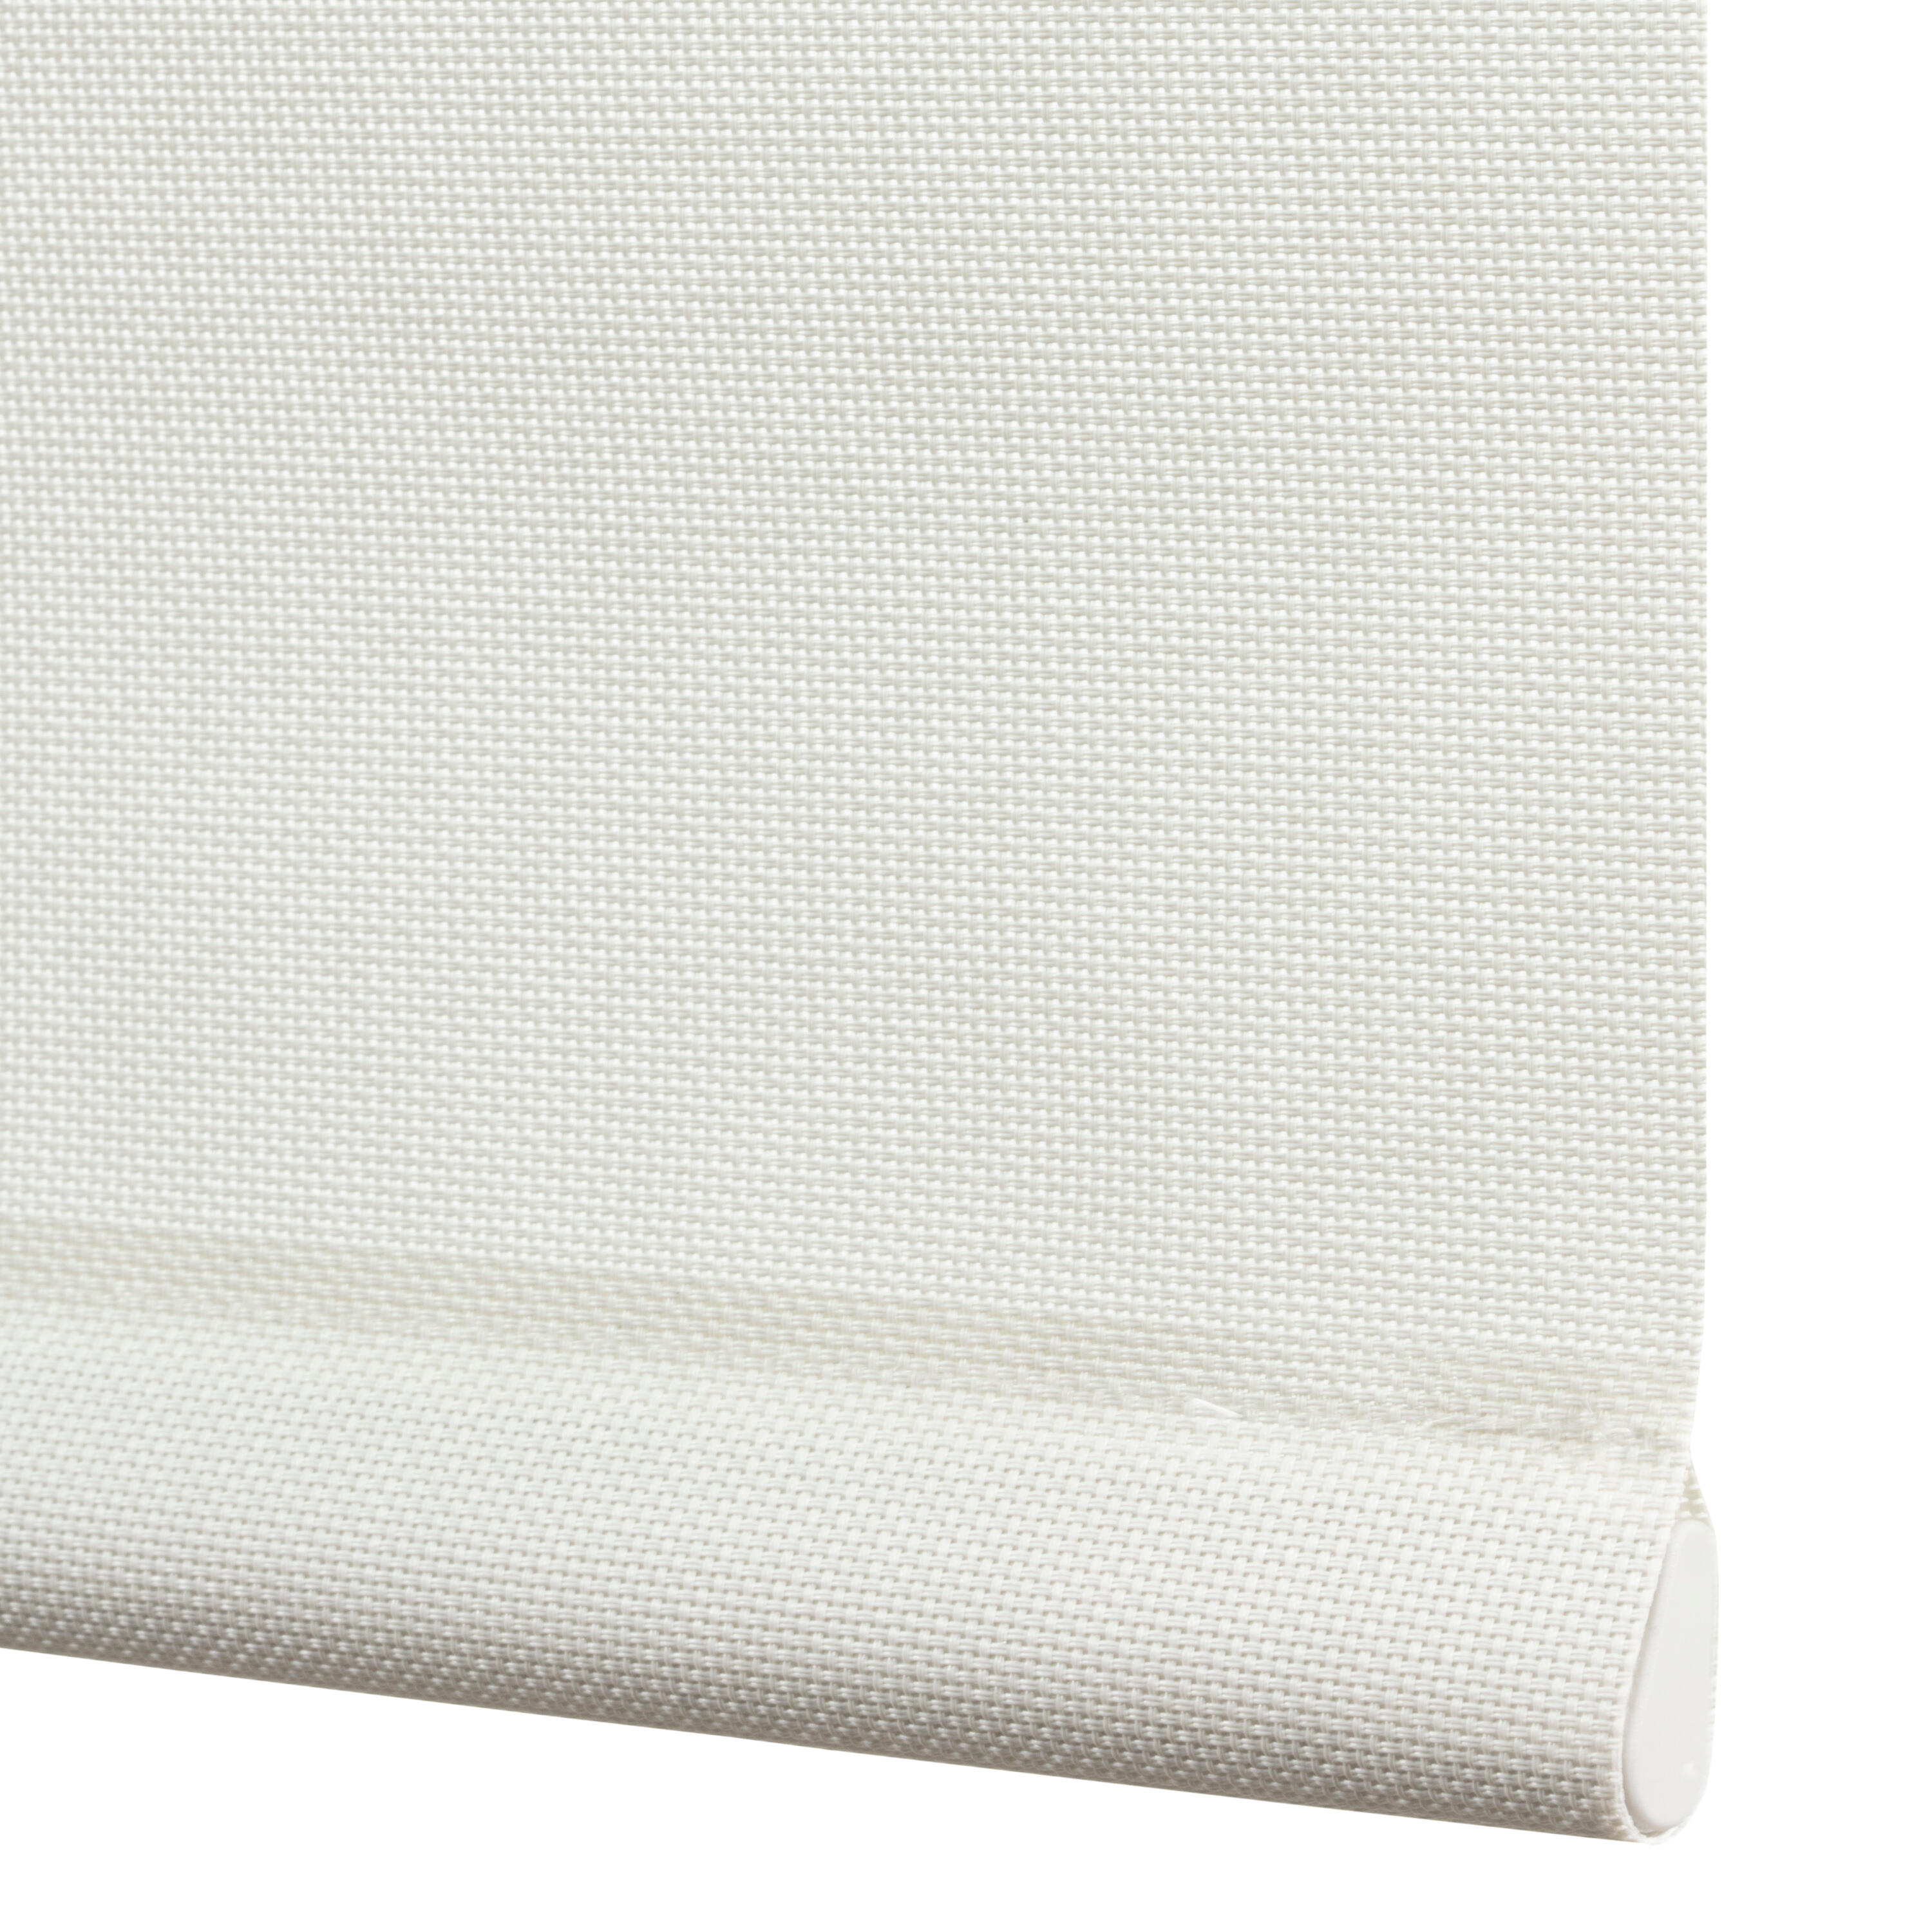 Tenda a rullo filtrante INSPIRE Brasilia bianco 120 x 250 cm - 4